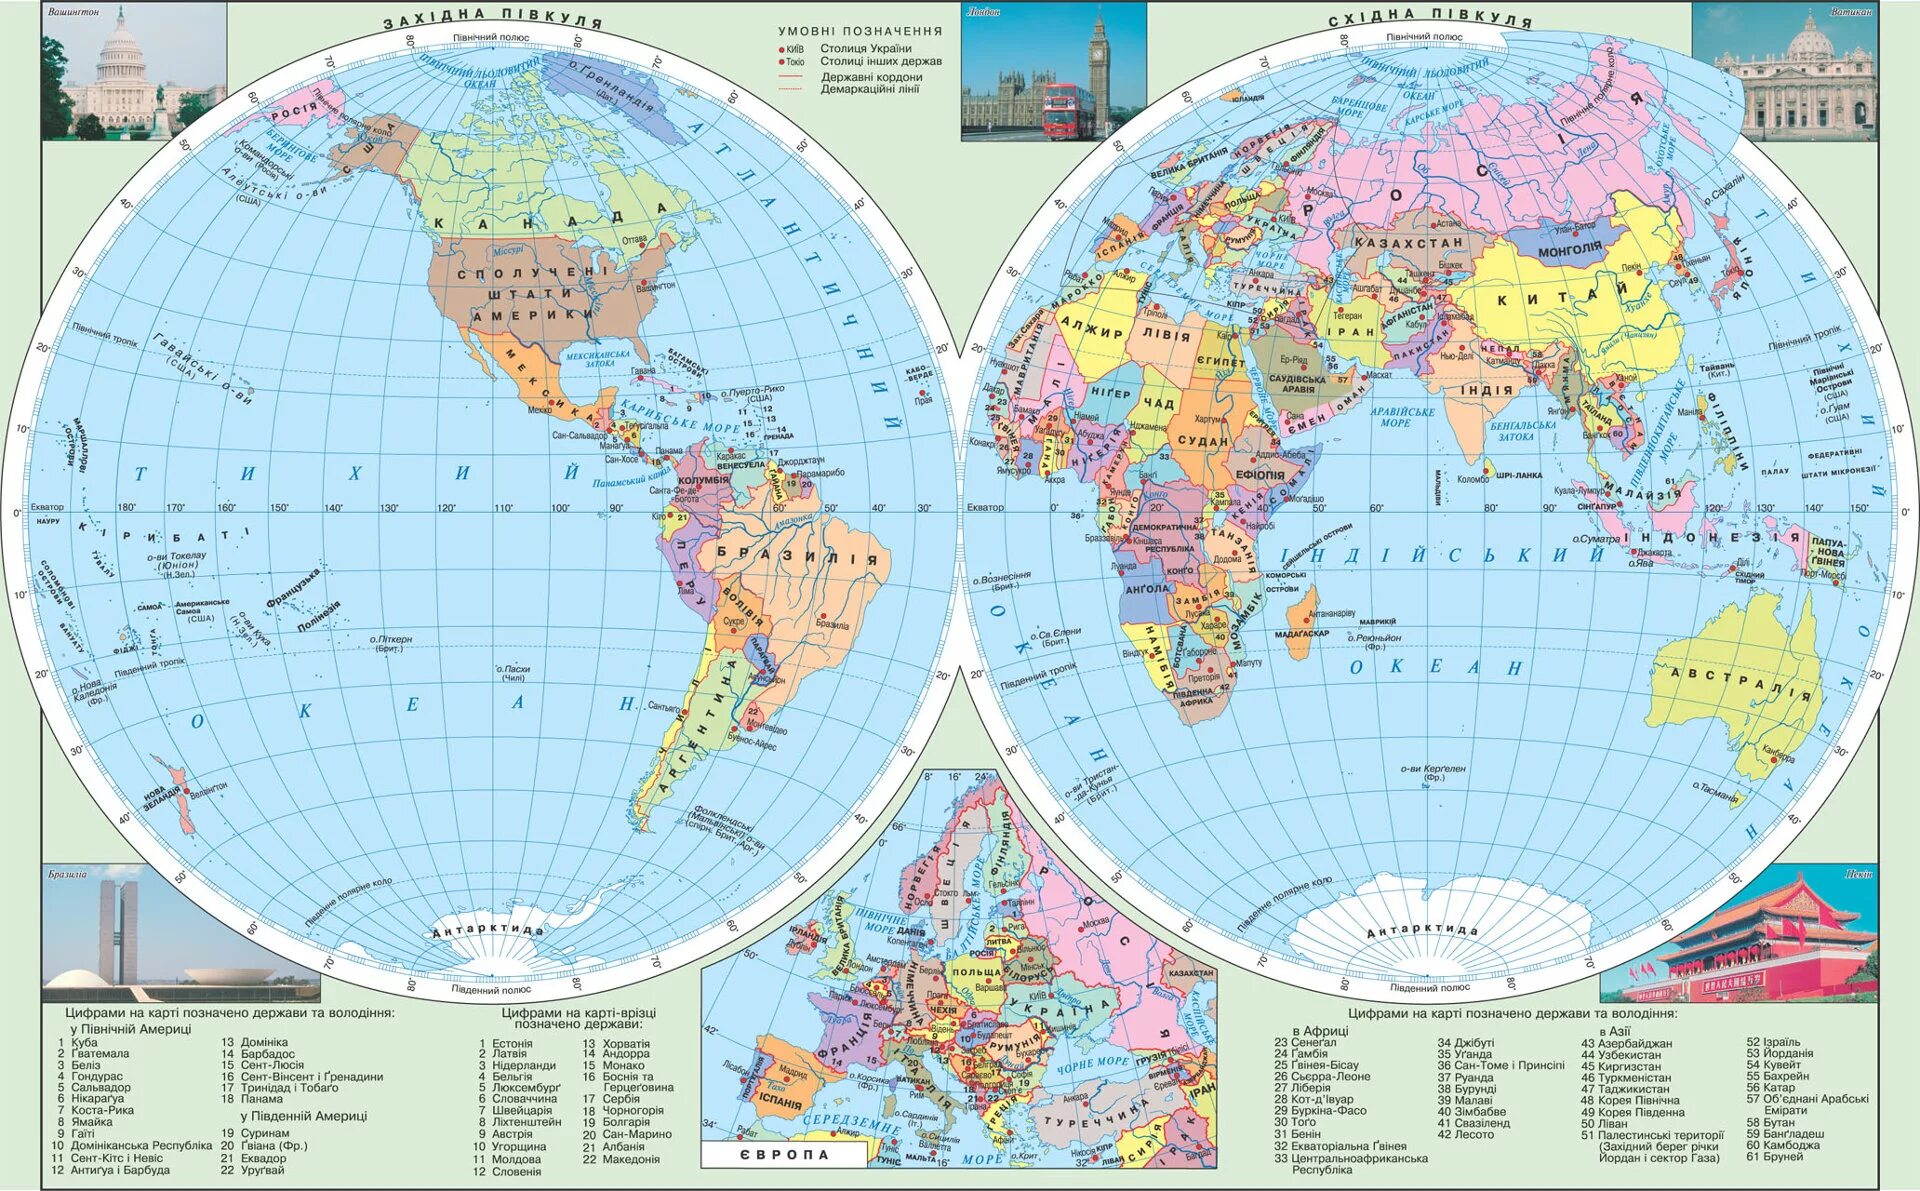 Что можно увидеть на карте. География 5 класс карта полушарий политическая карта. Карта Западного полушария земли со странами. Карта полушарий политическая карта по географии 5.